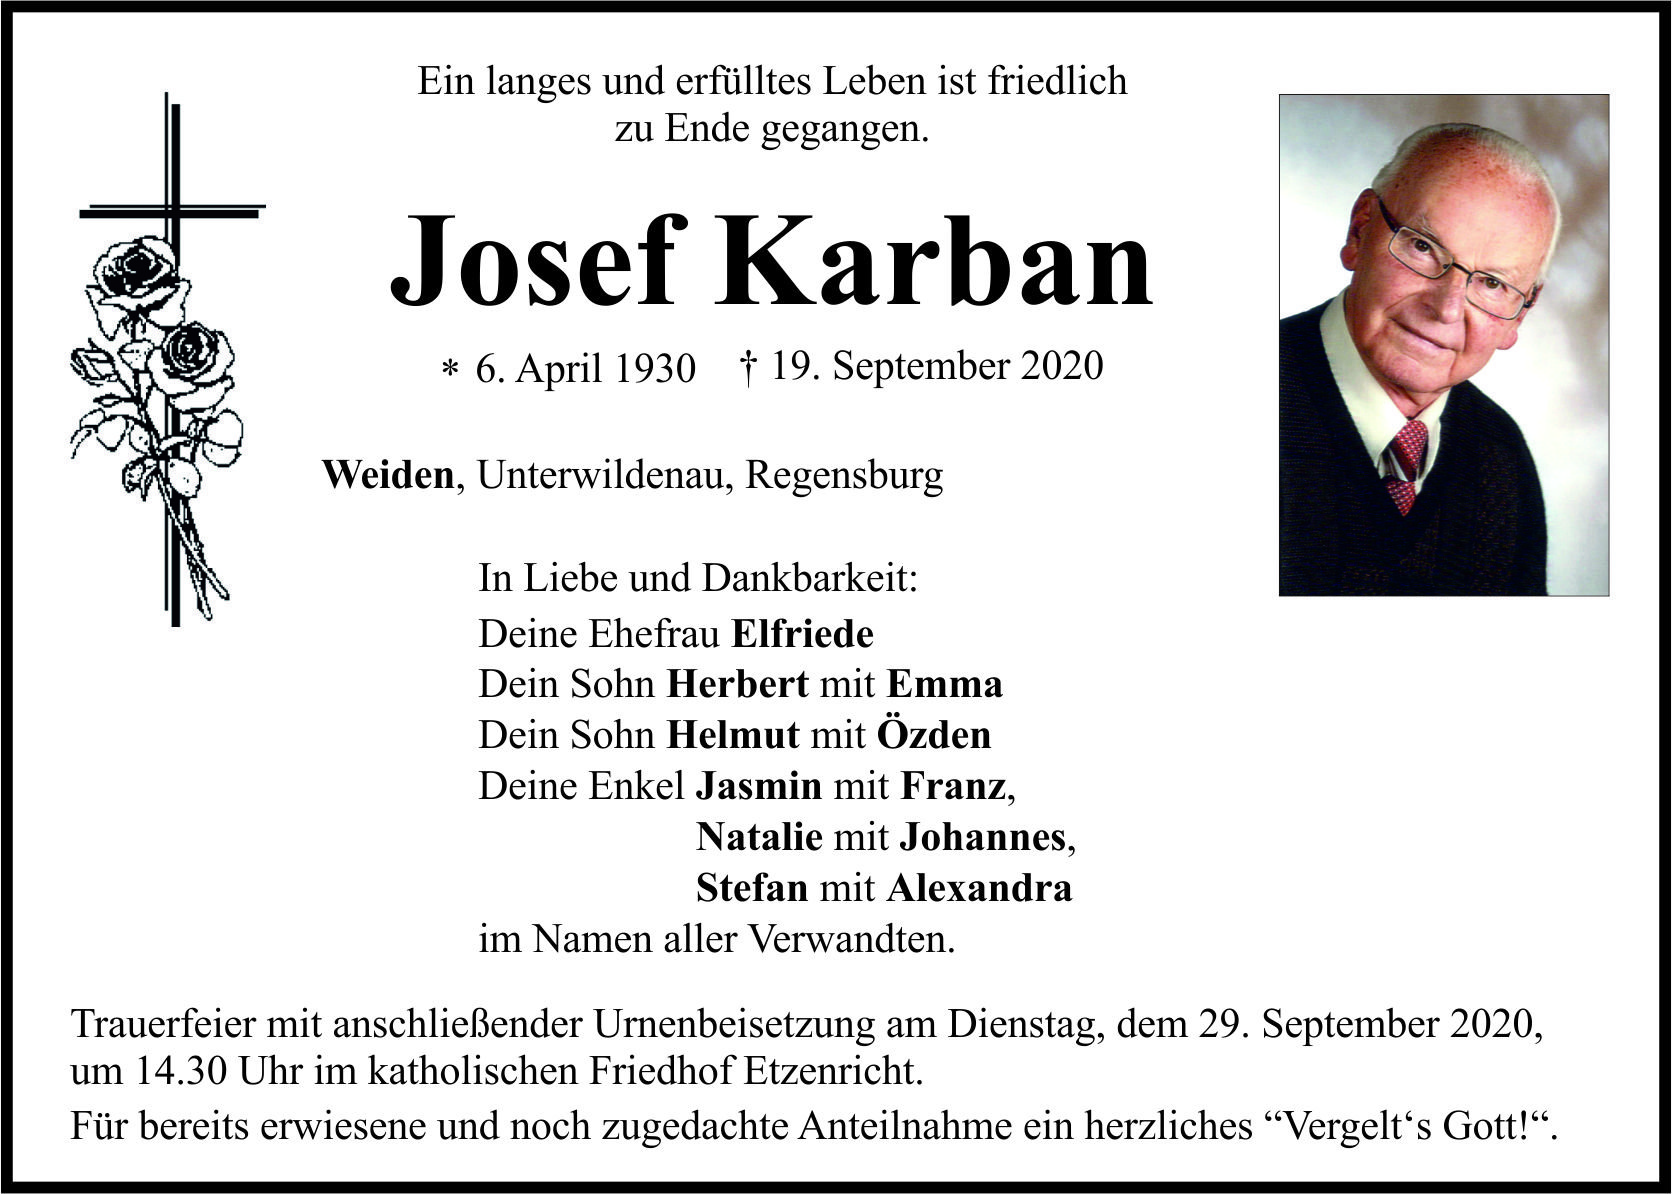 Traueranzeige Josef Karban, Weiden